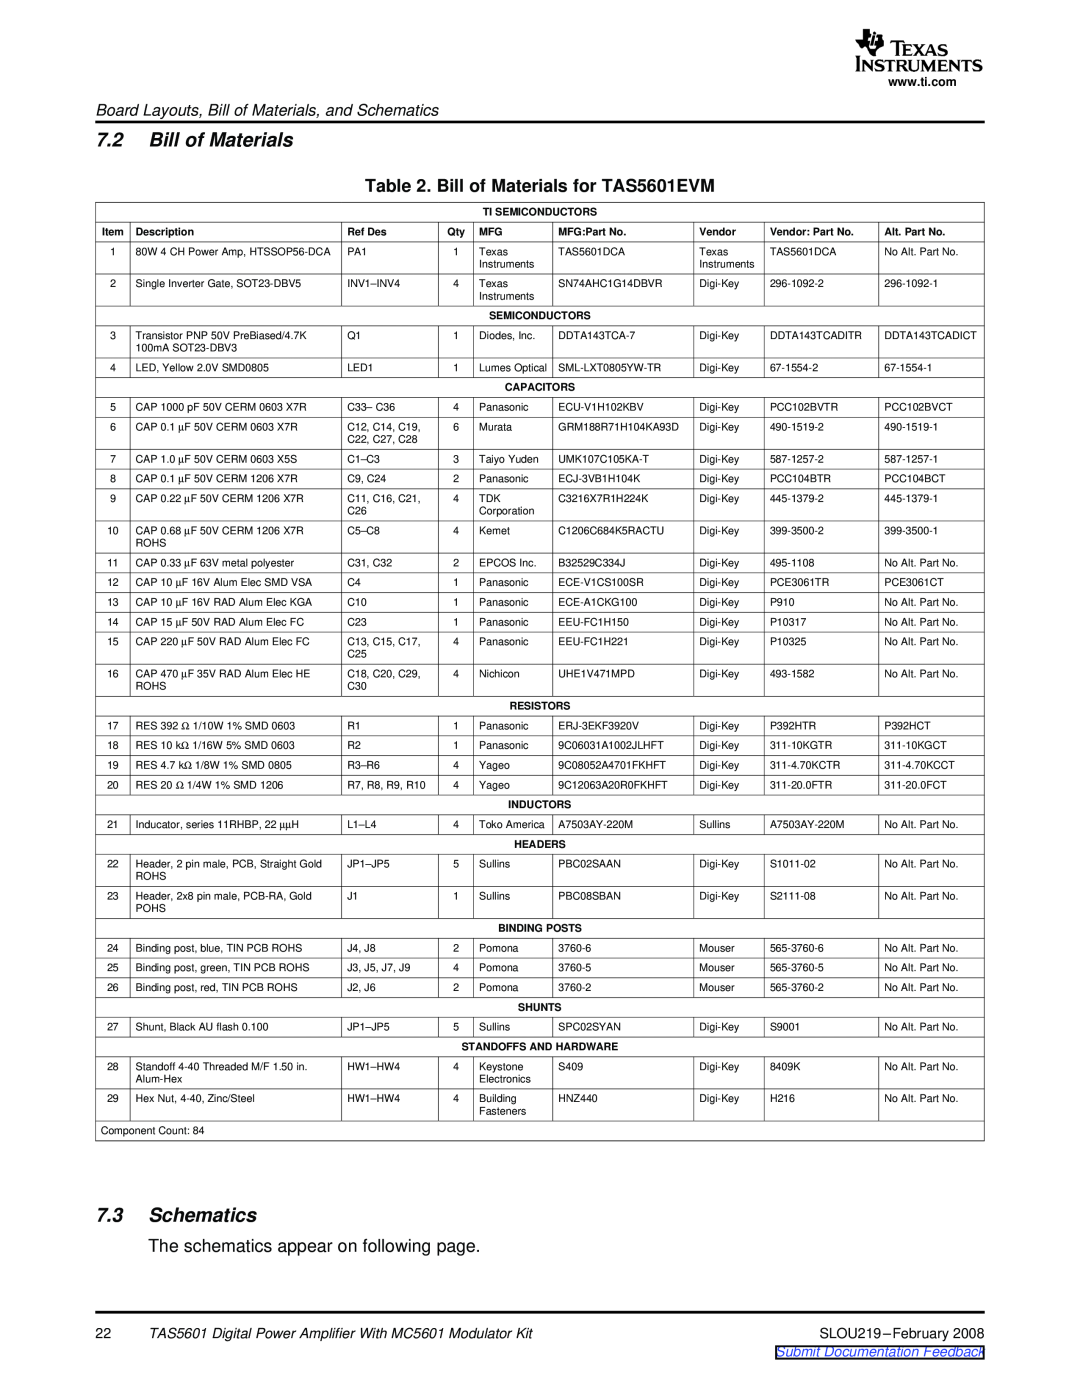 Texas Instruments 7.2Bill of Materials, 7.3Schematics, Bill of Materials for TAS5601EVM, Submit Documentation Feedback 